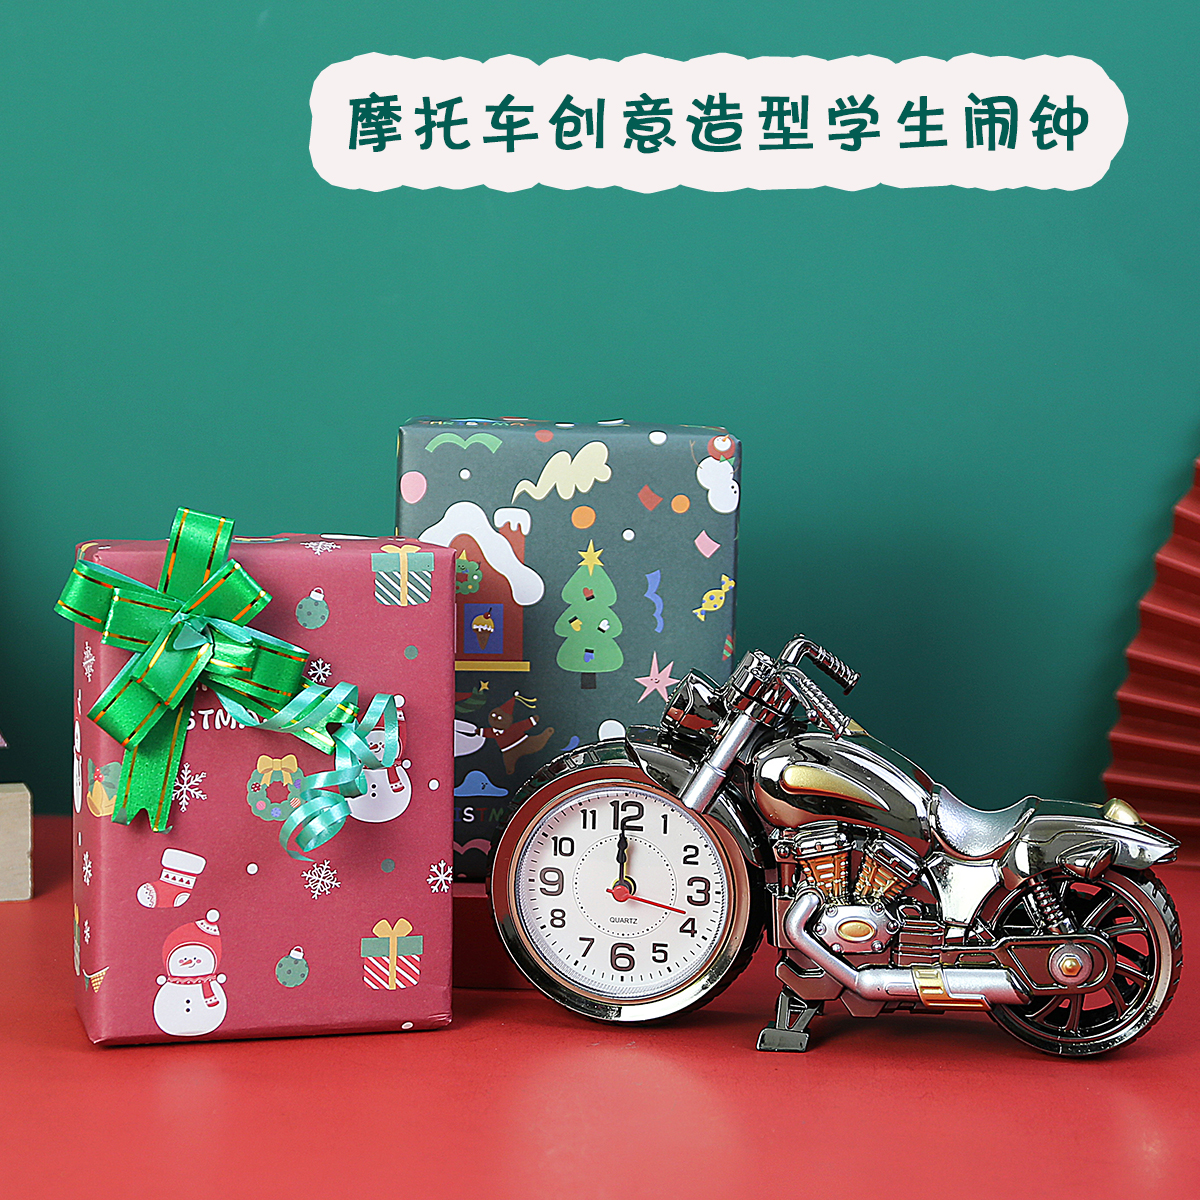 个性造型摩托车闹钟奖励初中生送学生有纪念意义礼物实用期末奖品